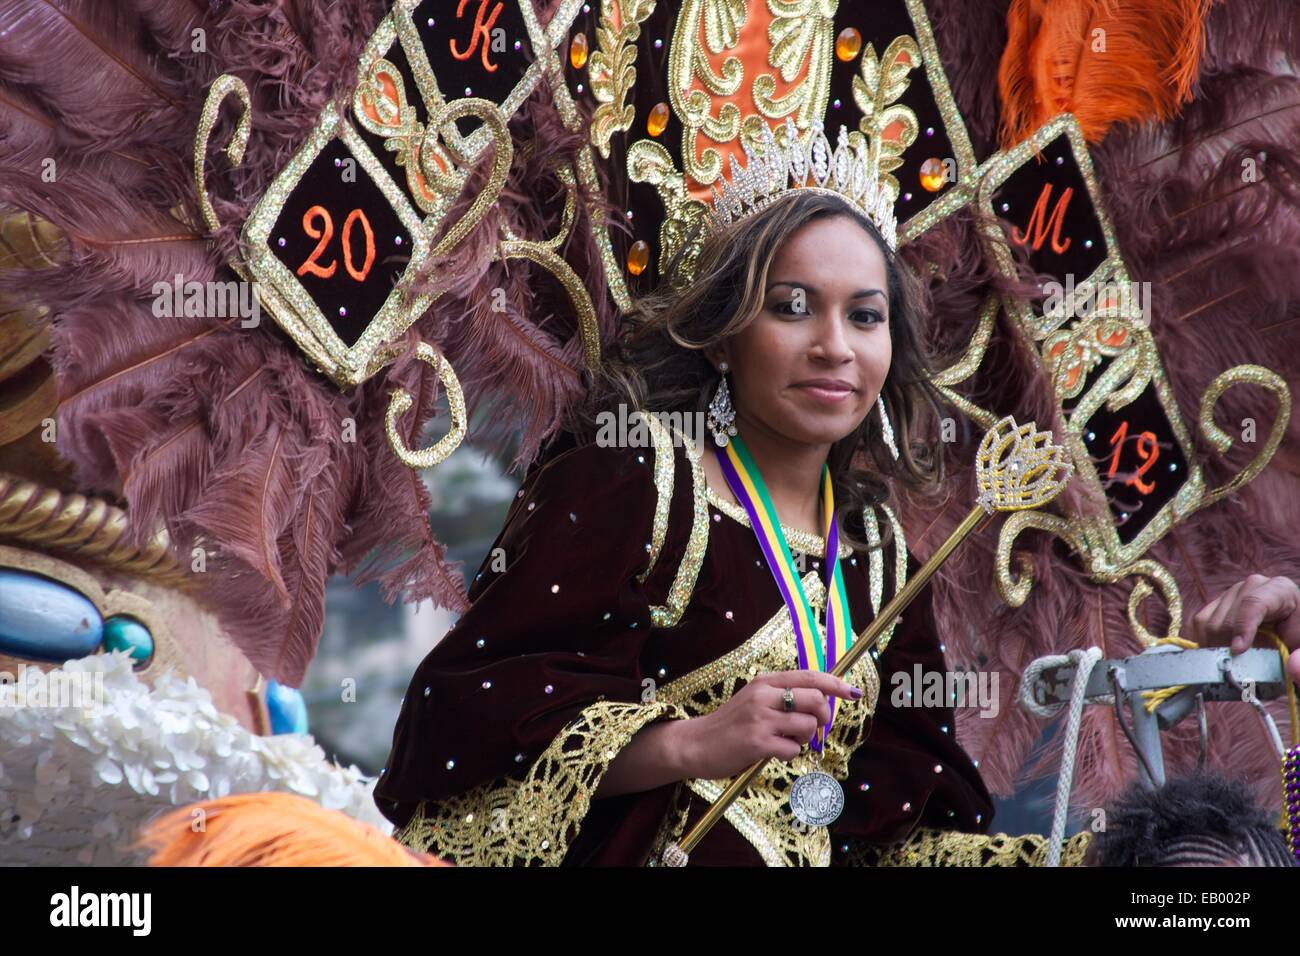 D NOMTOC Krewe, défilé de Mardi Gras, New Orleans, LA Banque D'Images